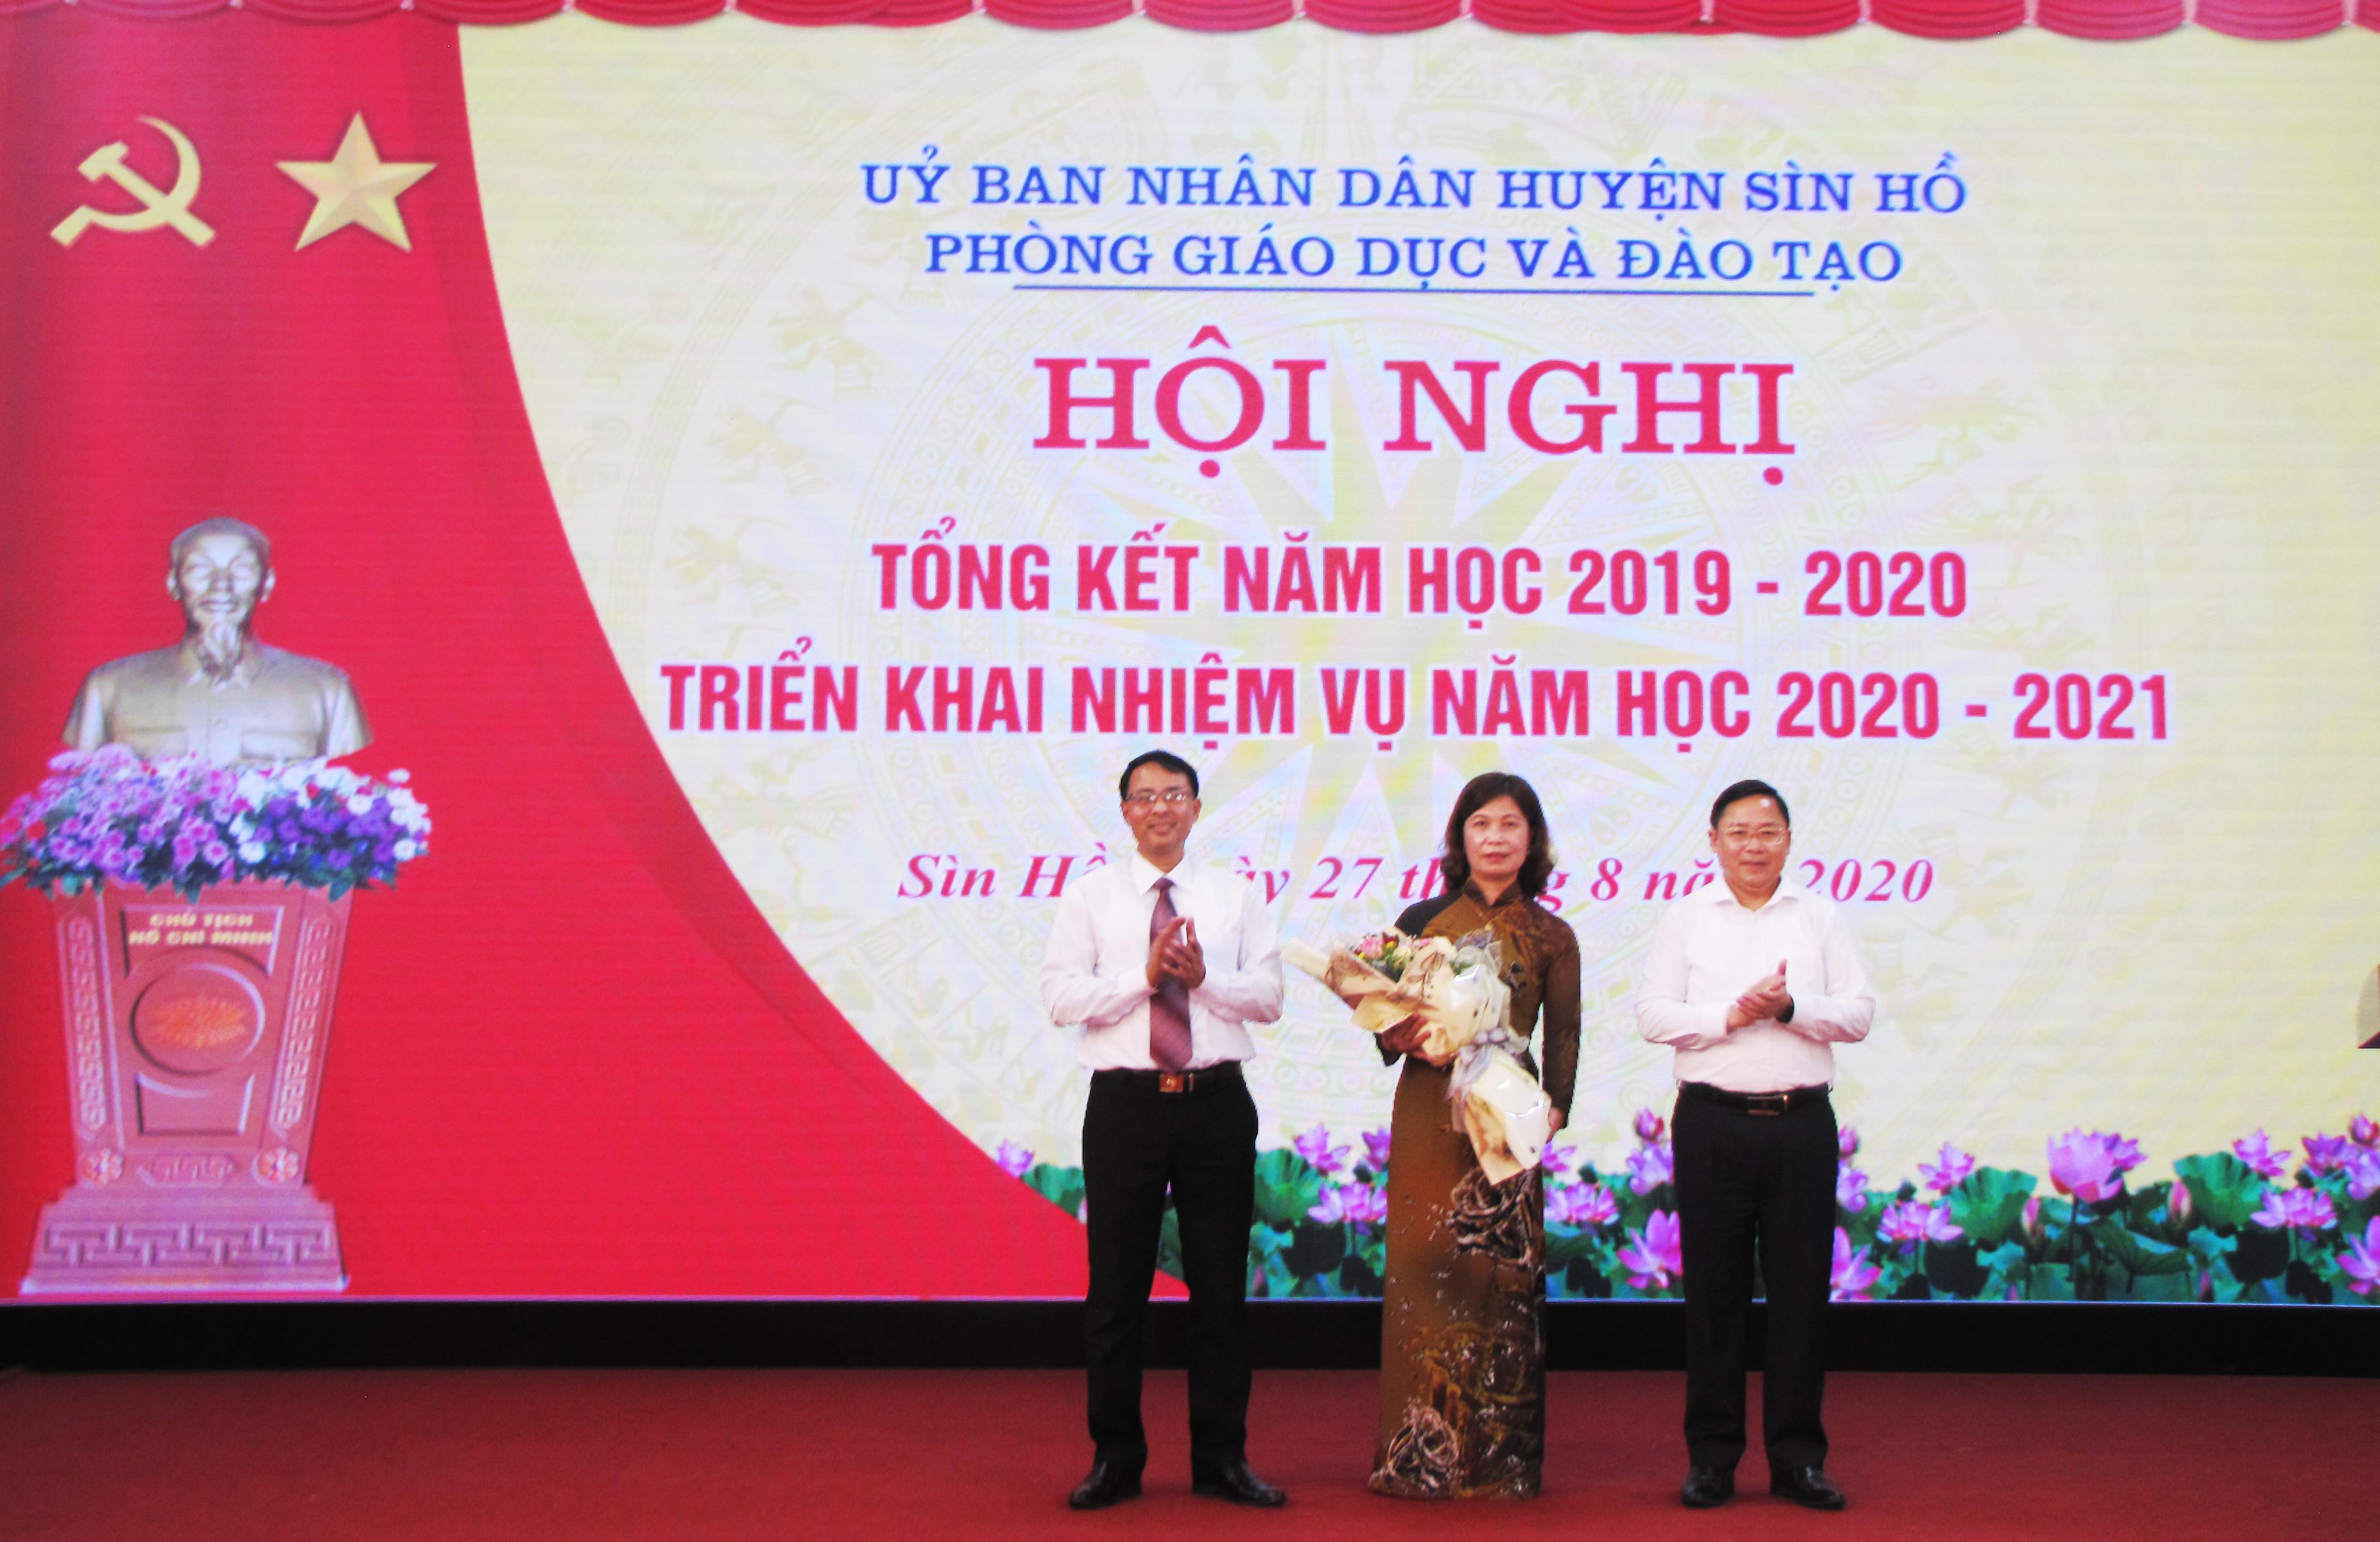 Đồng chí Đinh Trung Tuấn – Giám đốc Sở Giáo dục và Đào tạo tặng hoa chúc mừng hội nghị.